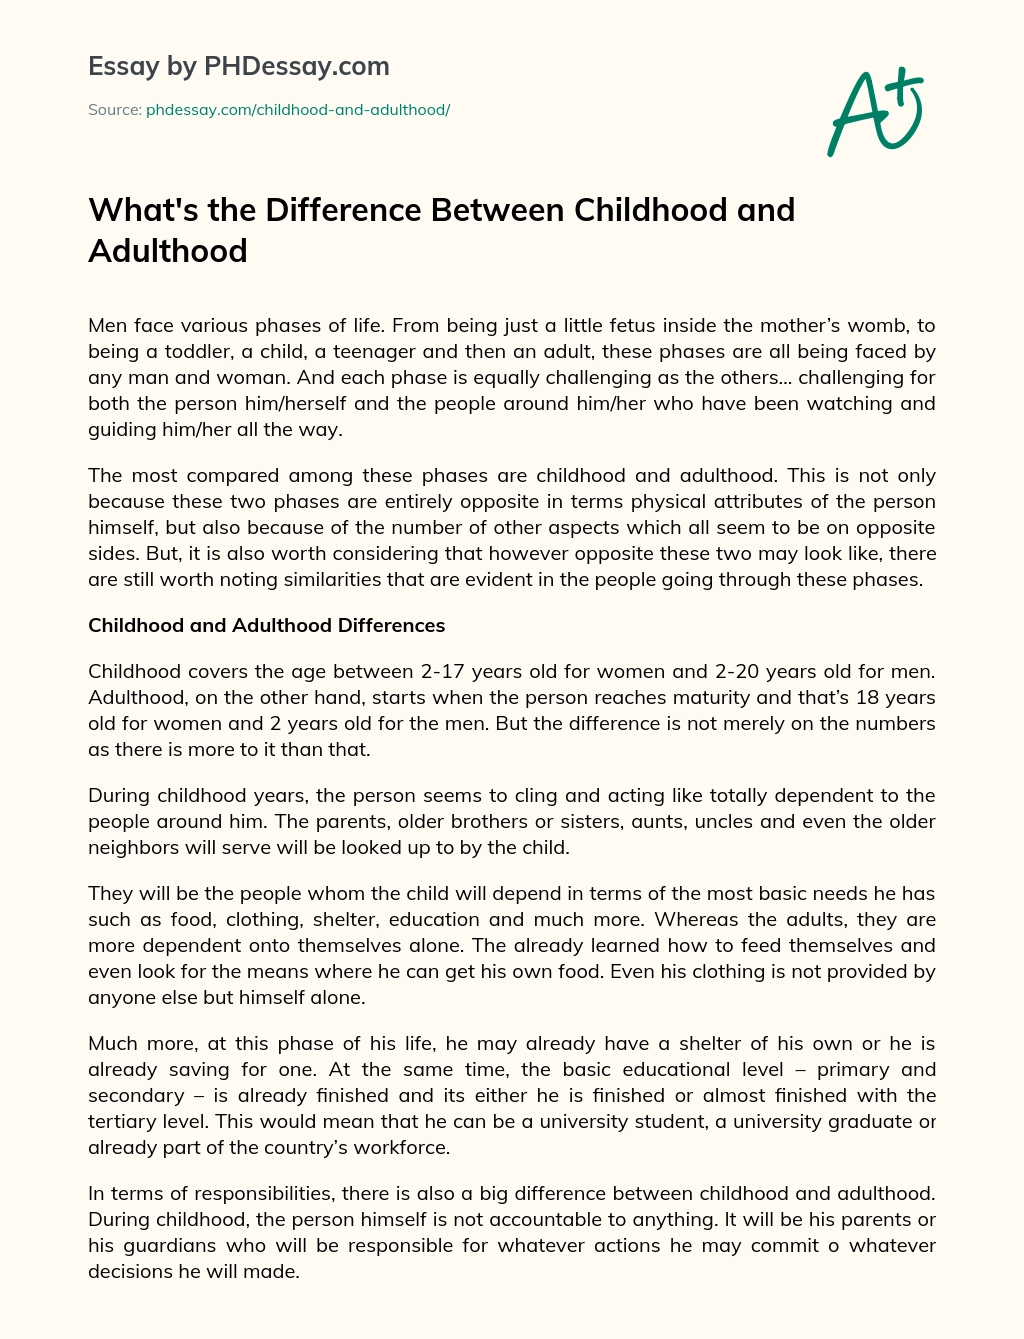 Hva Er Forskjellen Mellom Barndom og Voksenliv essay